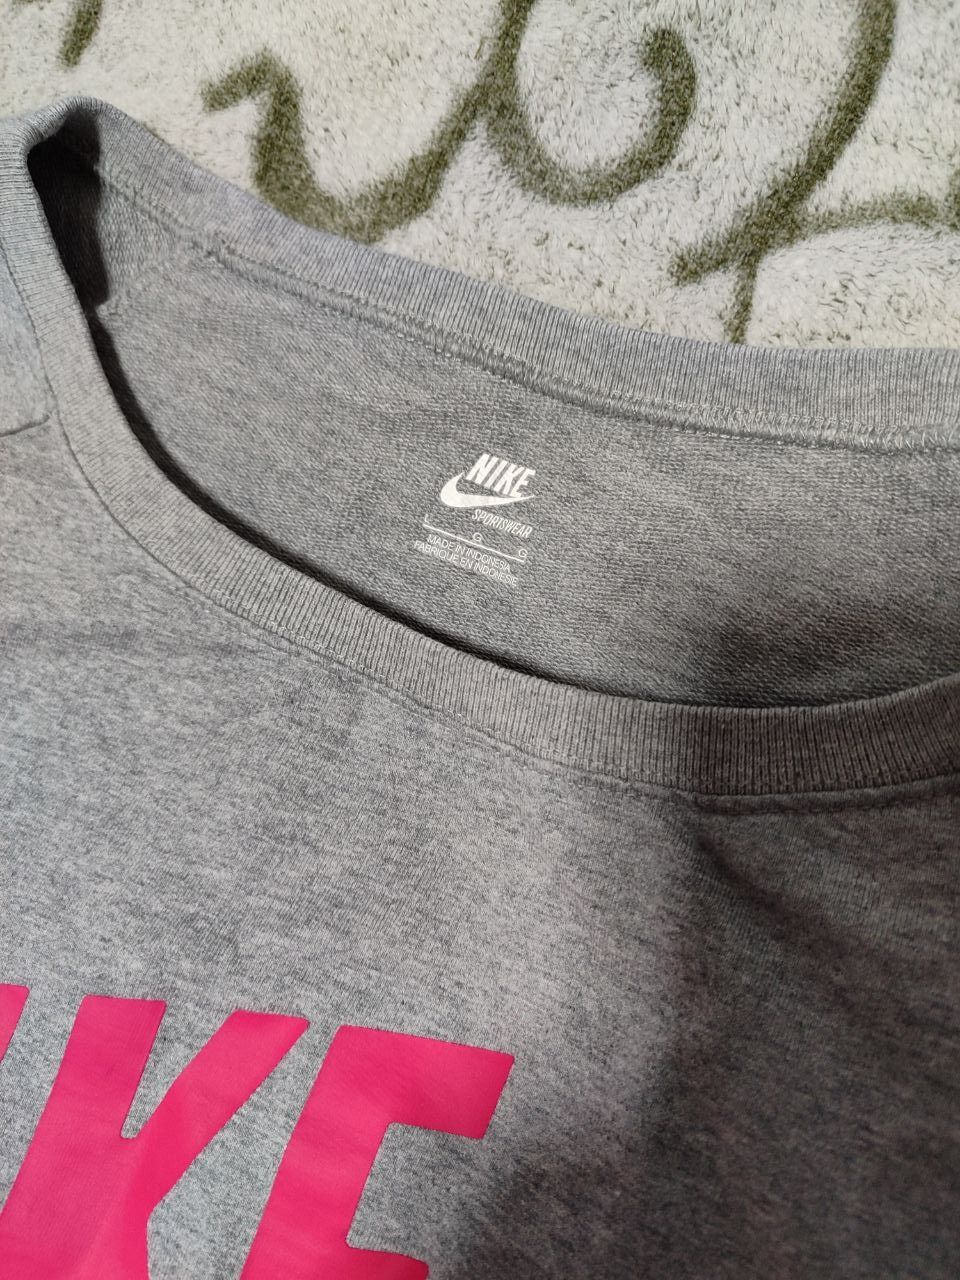 Женская кофта Nike, размер L, оригинал